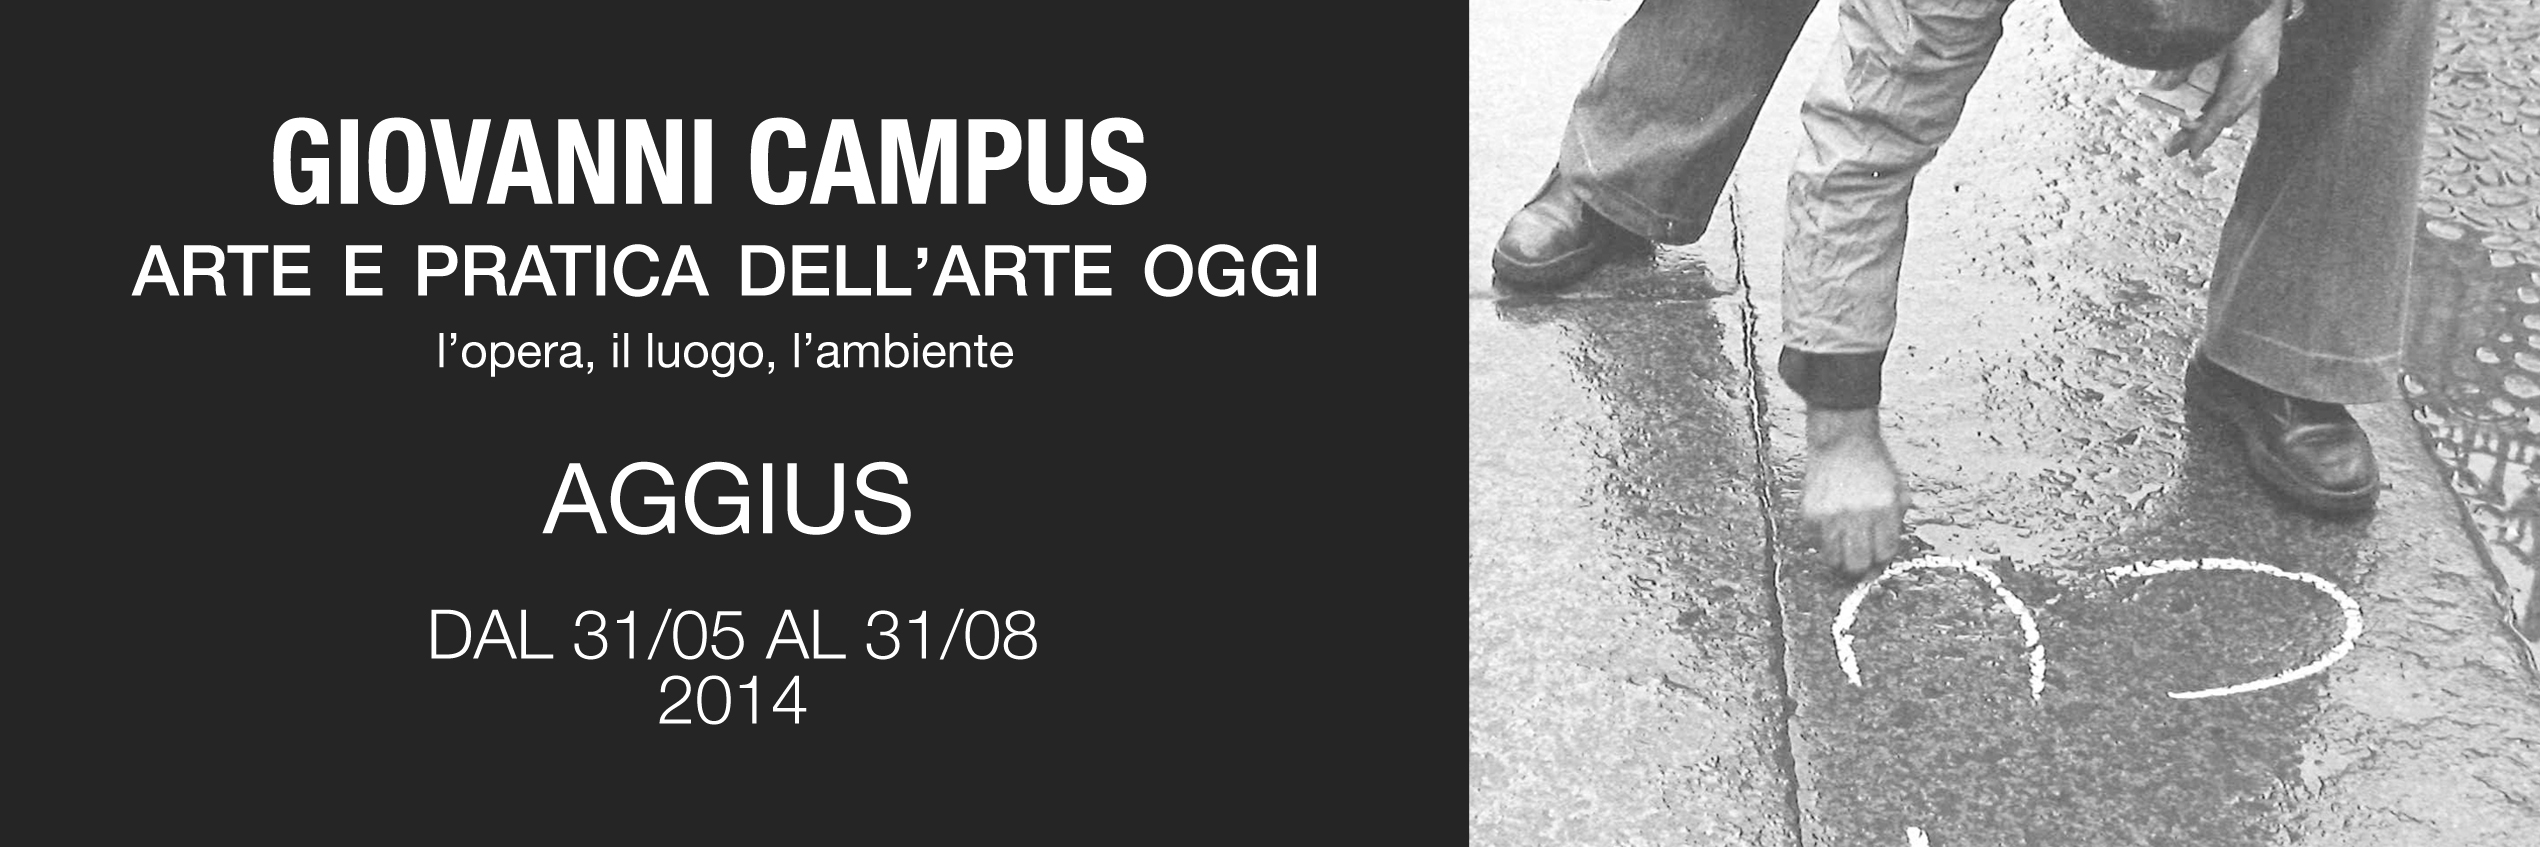 Giovanni Campus – Arte e pratica dell’arte oggi – Aggius – dal 31/05 al 31/08 2014